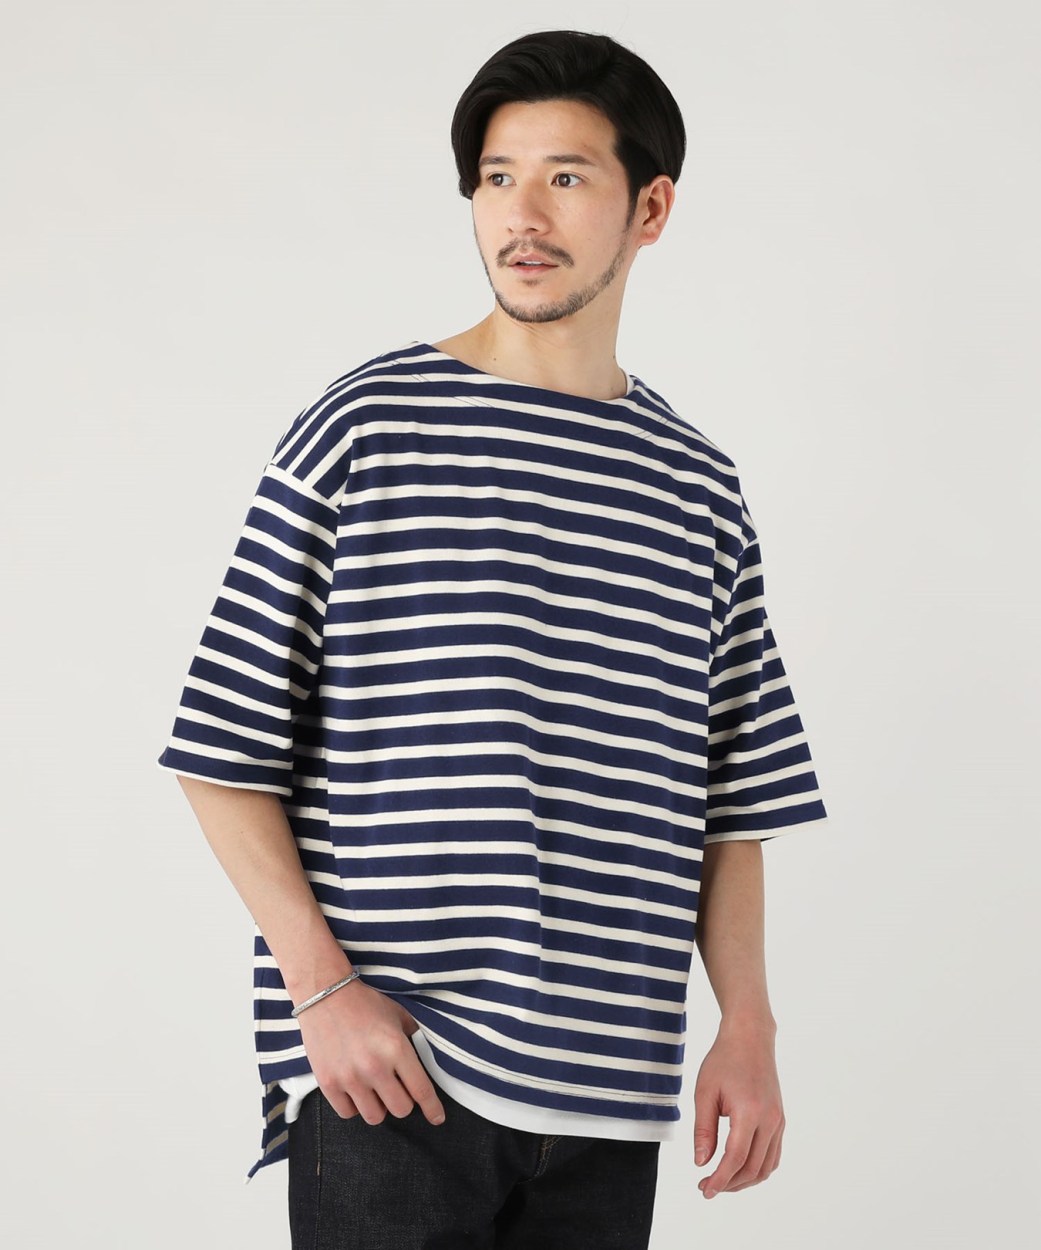 バスクシャツ Tシャツ カットソー メンズ 春 春服 日本製 国産 10 